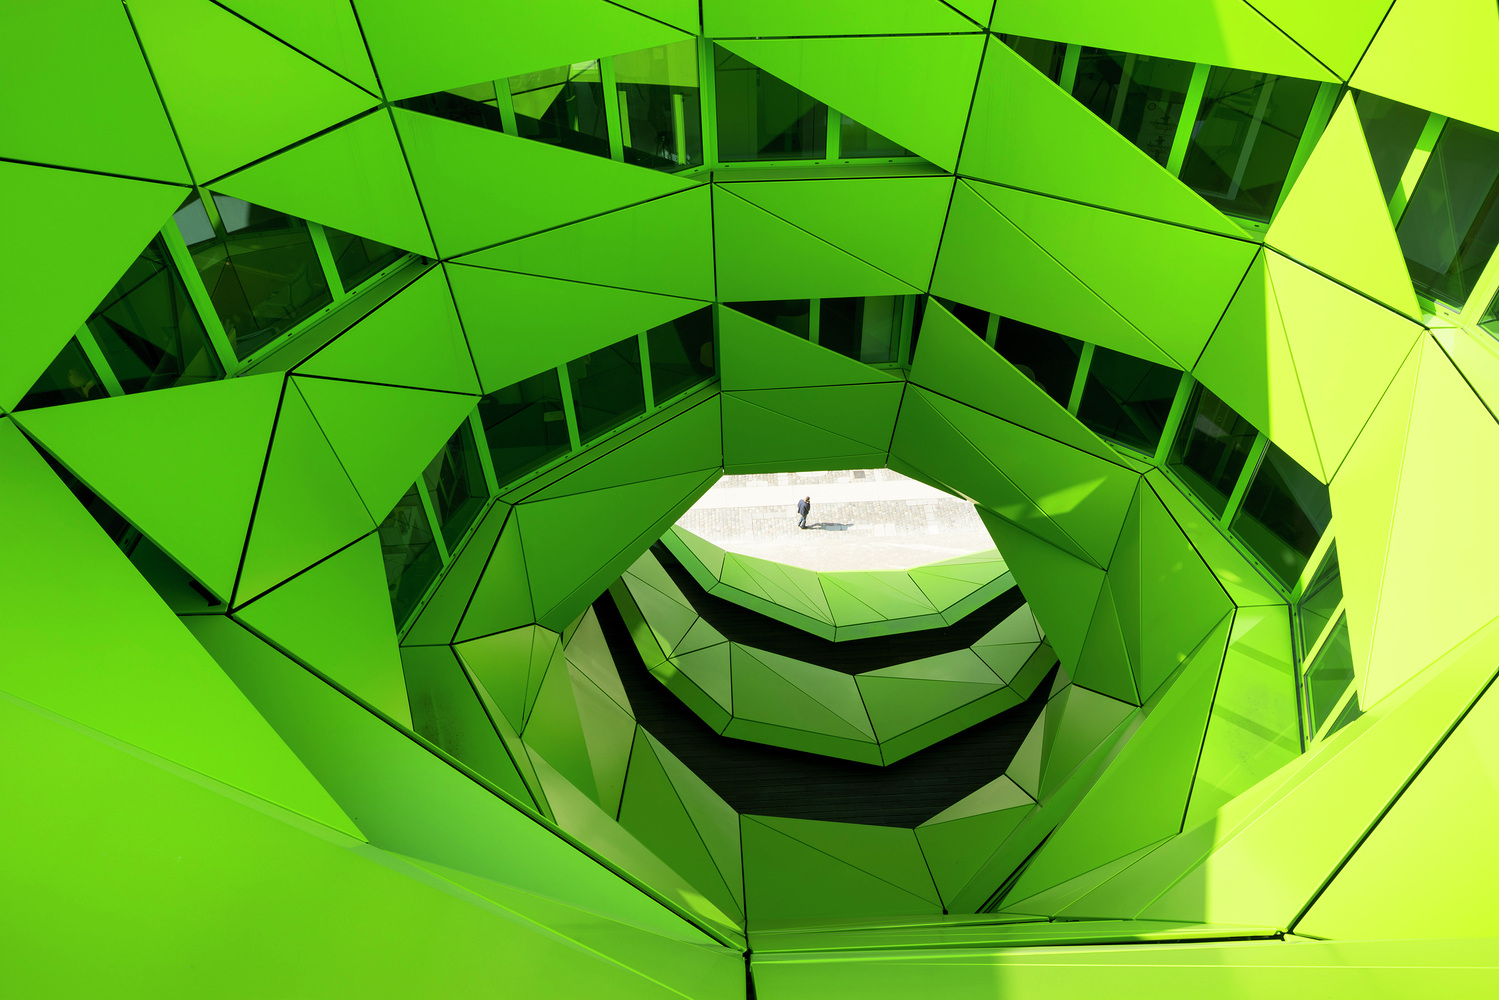 Sede da Euronew faz uso de cores na arquitetura através do design pensado ao entorno do verde como simbolo da estética sustentável